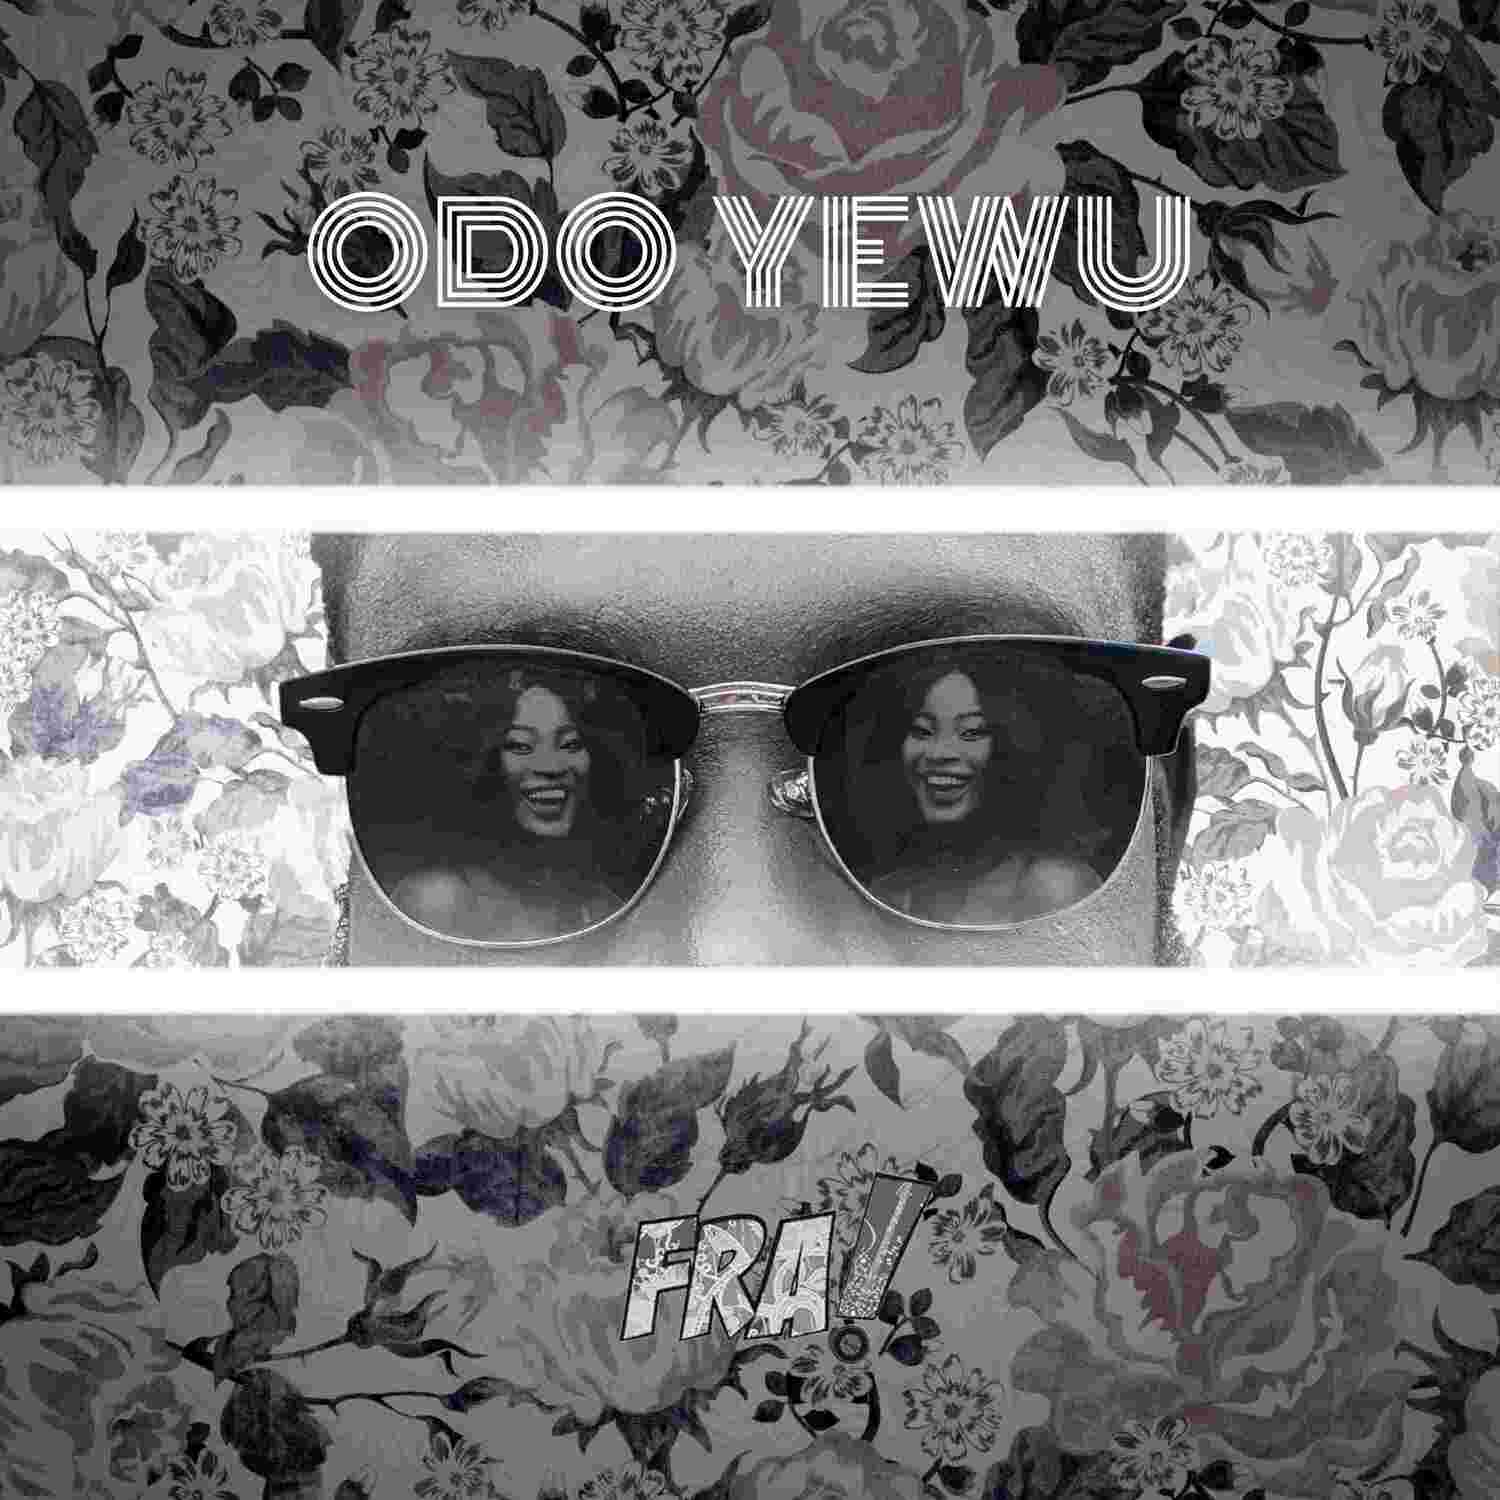 Odo Yewu by FRA!